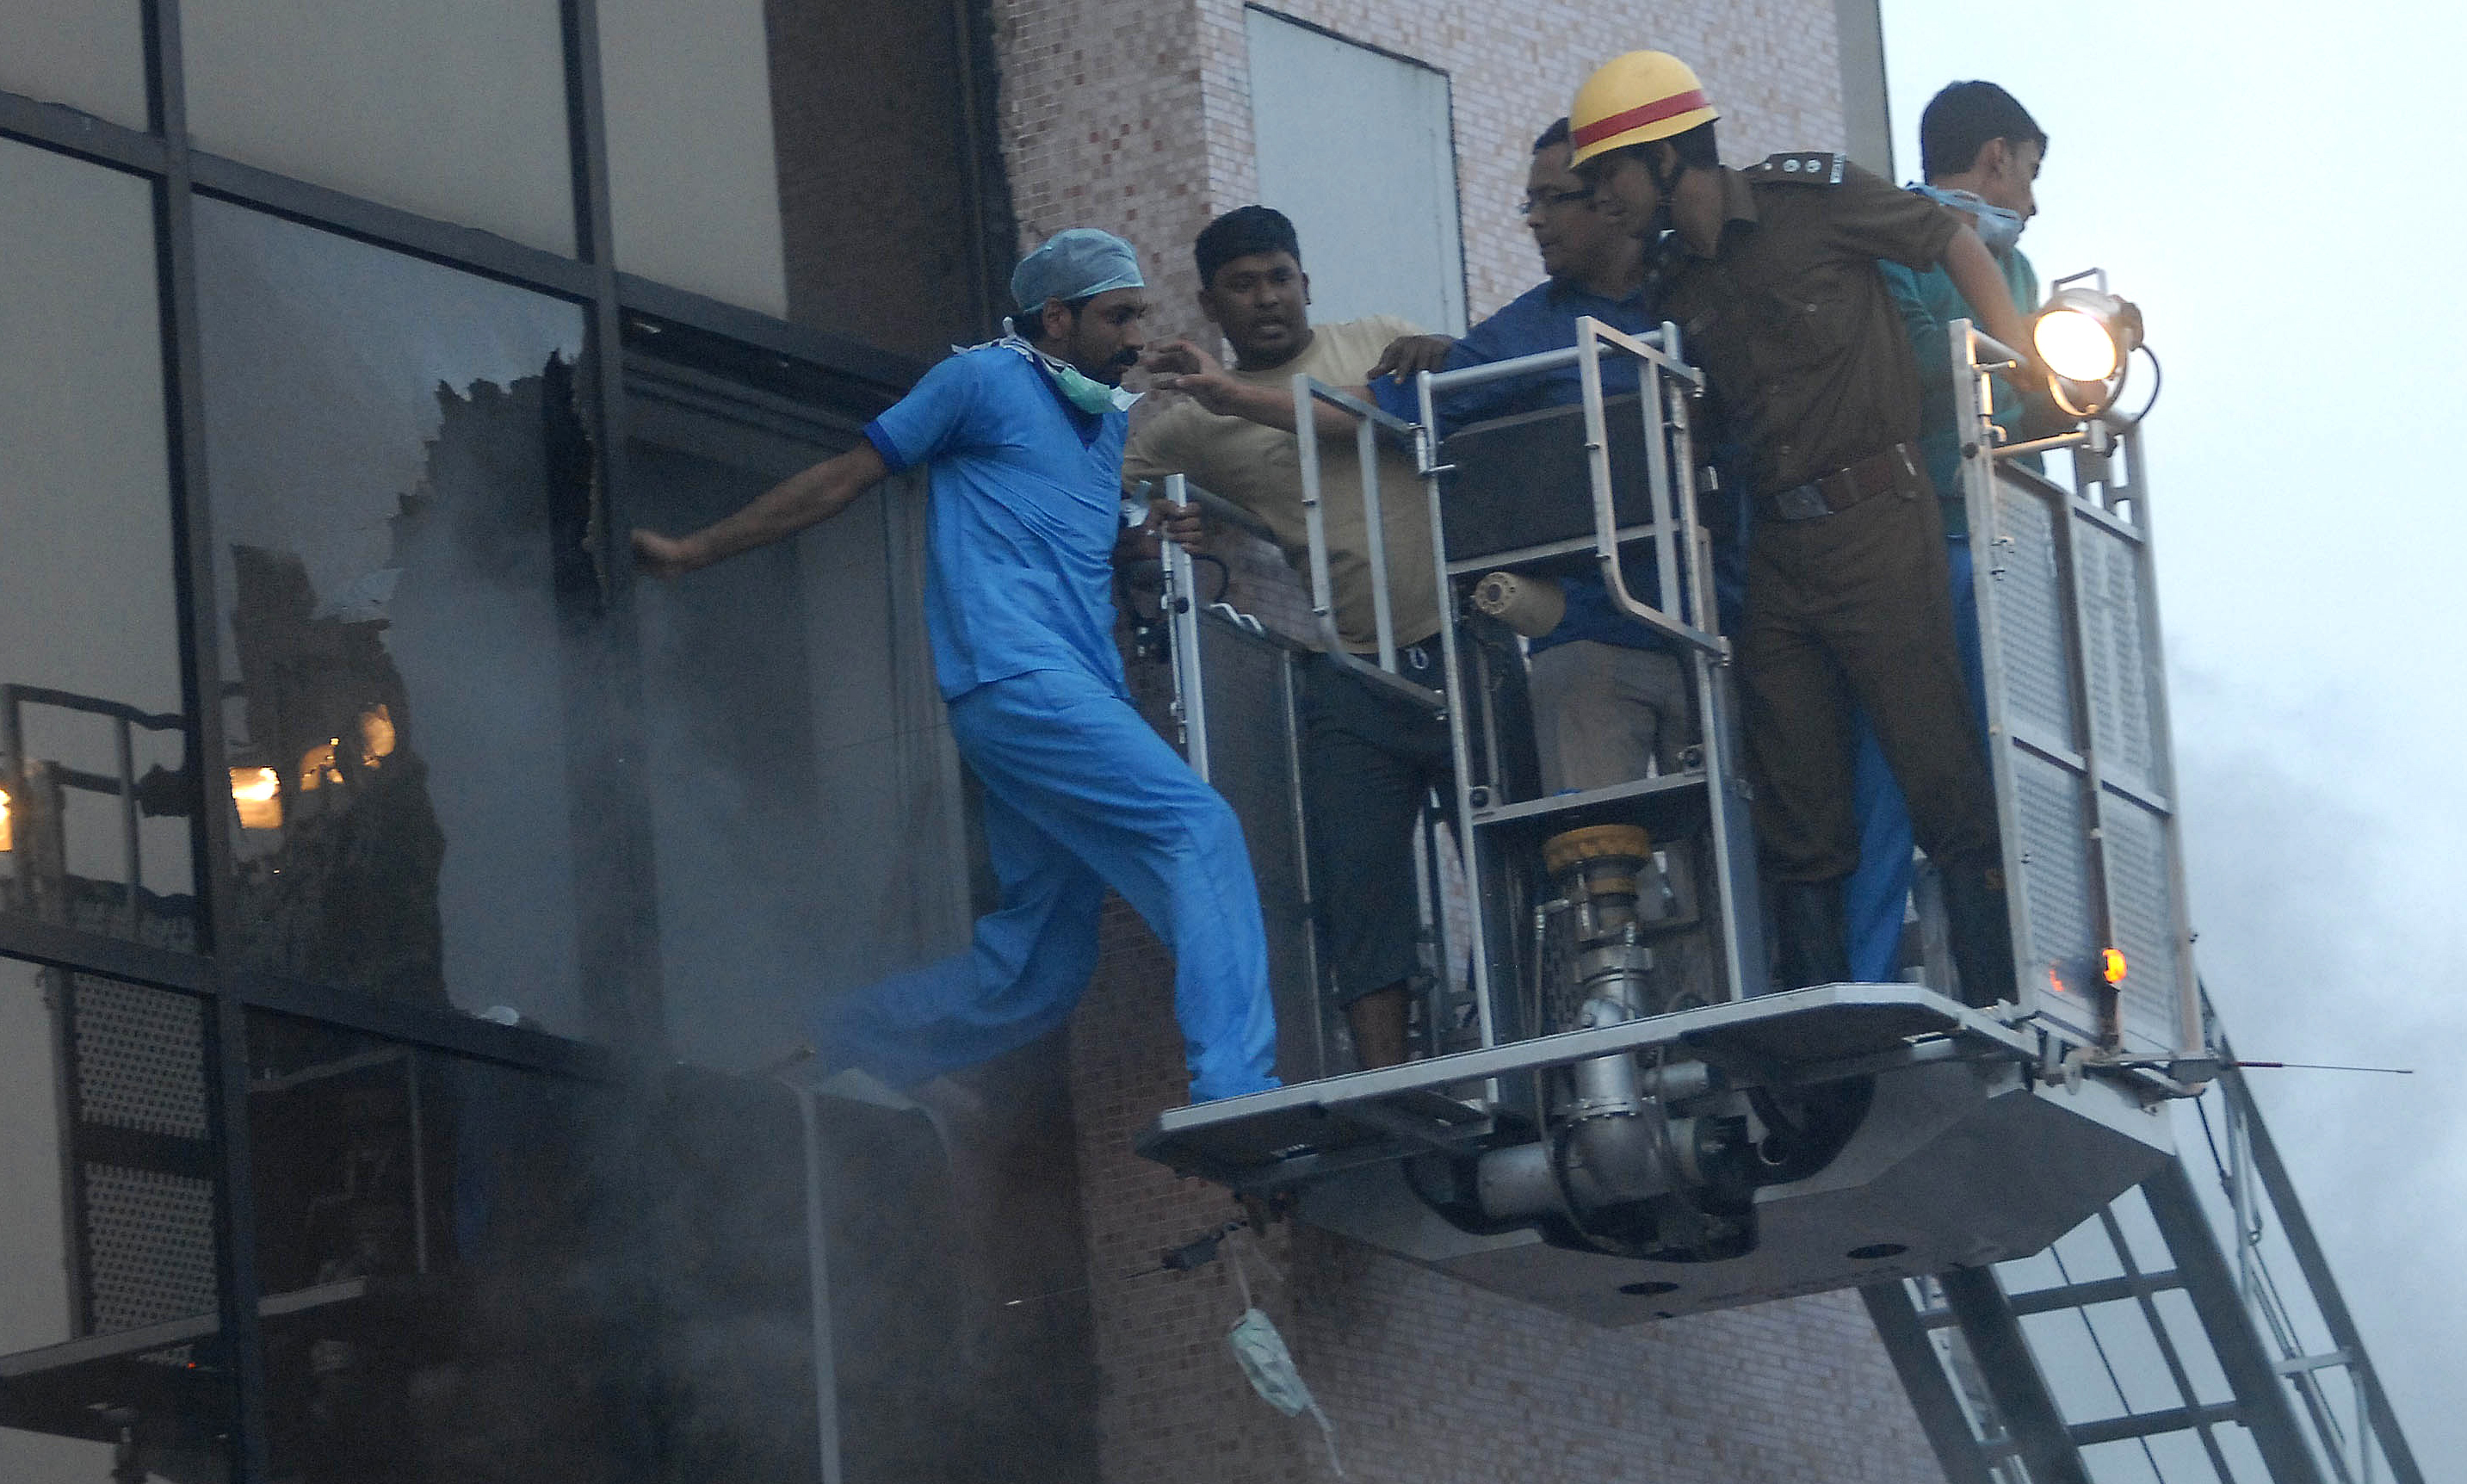 Багато хто з них задихнувся від диму. На момент пожежі в клініці перебувало 160 пацієнтів. Індійська влада чекає, що кількість жертв може зрости. Фото: STRDEL/AFP/Getty Images 